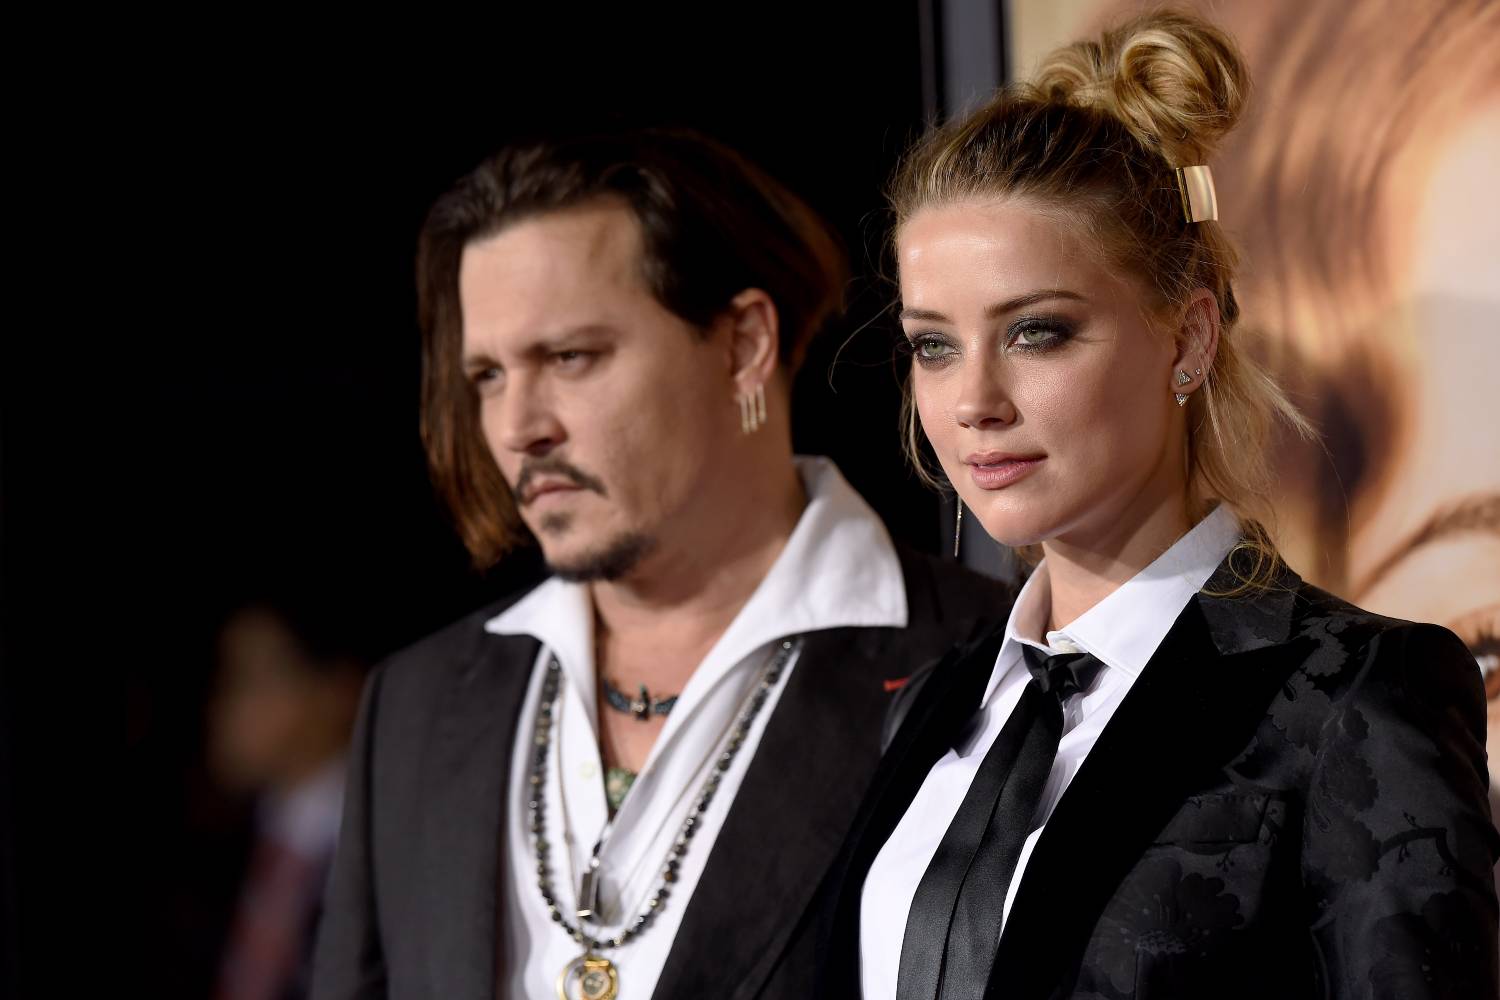 Johnny Depp contesta nova evidência apresentada por Amber Heard em  julgamento - Folha do ES